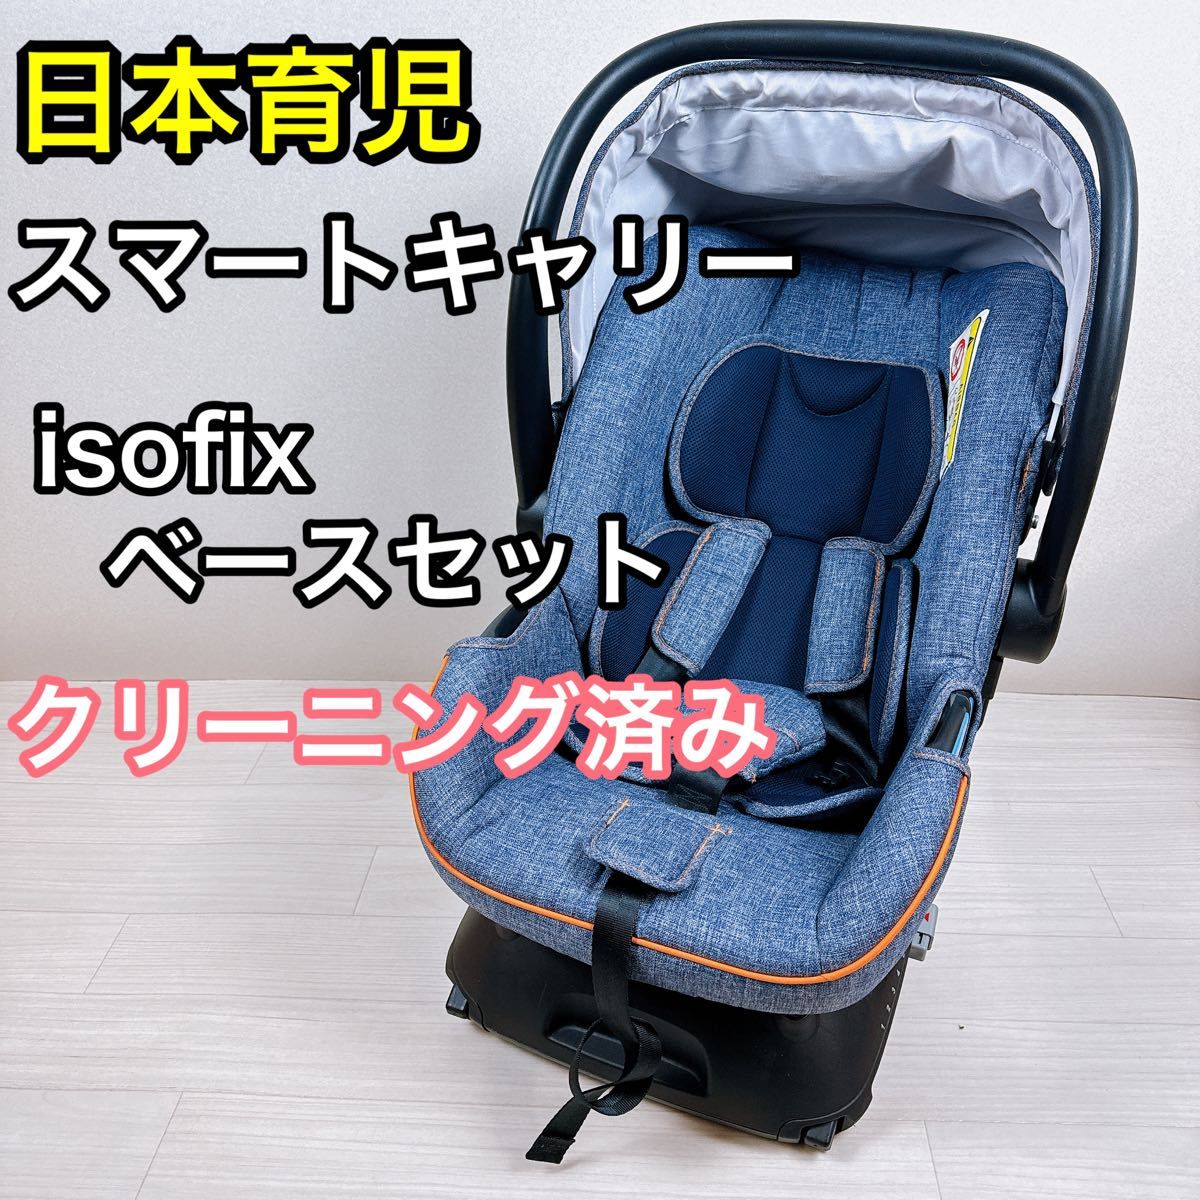 日本育児 スマートキャリー ISOFIXベースセット チャイルドシート デニム